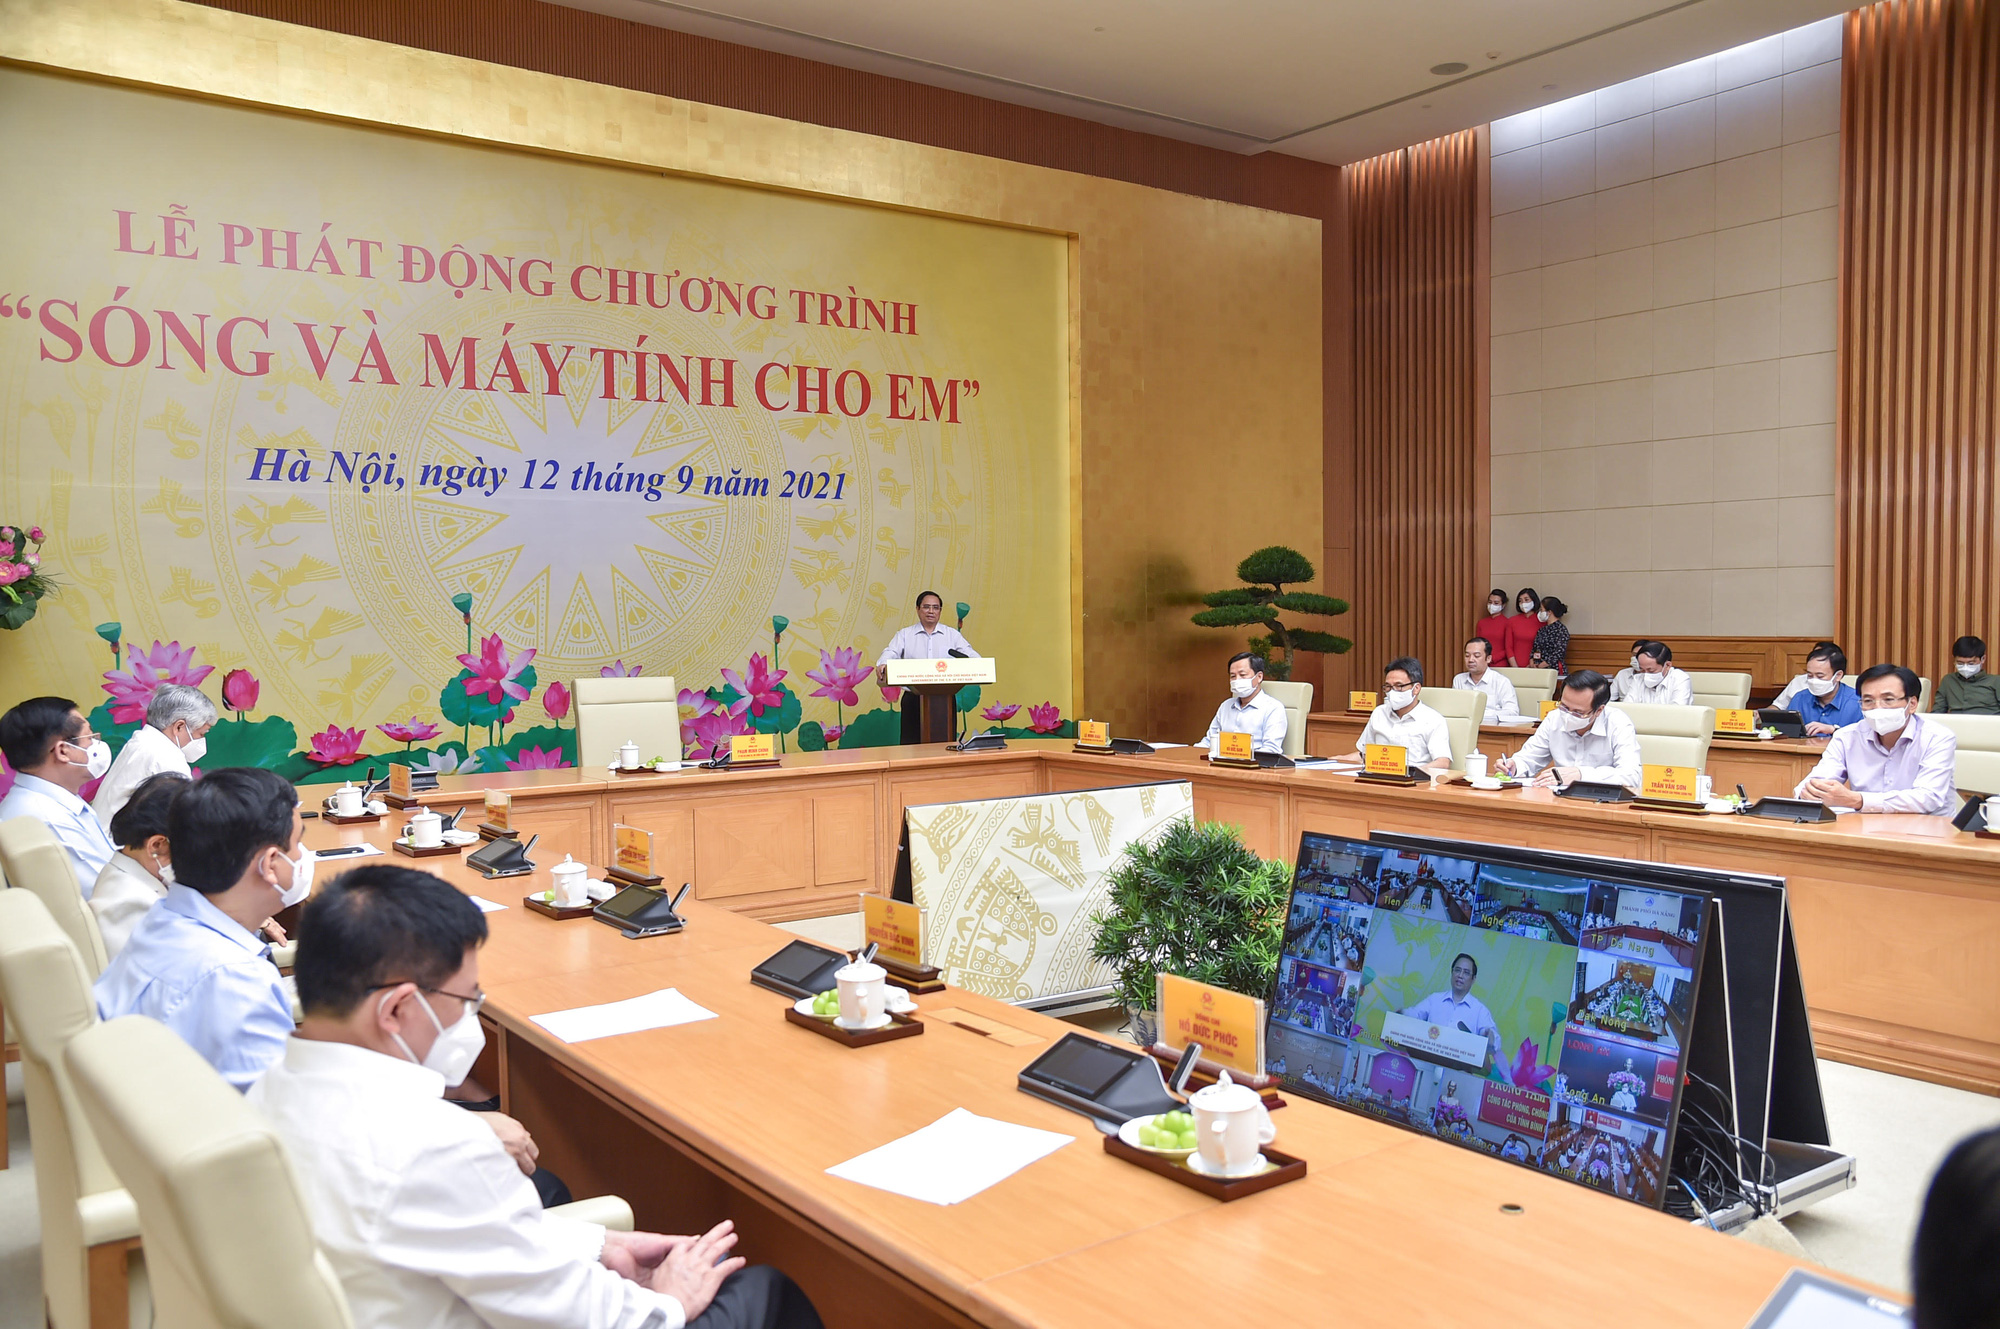 Thủ tướng Phạm Minh Chính kêu gọi chung tay, góp sức hỗ trợ “sóng và máy tính” cho hàng triệu học sinh, sinh viên - Ảnh 2.